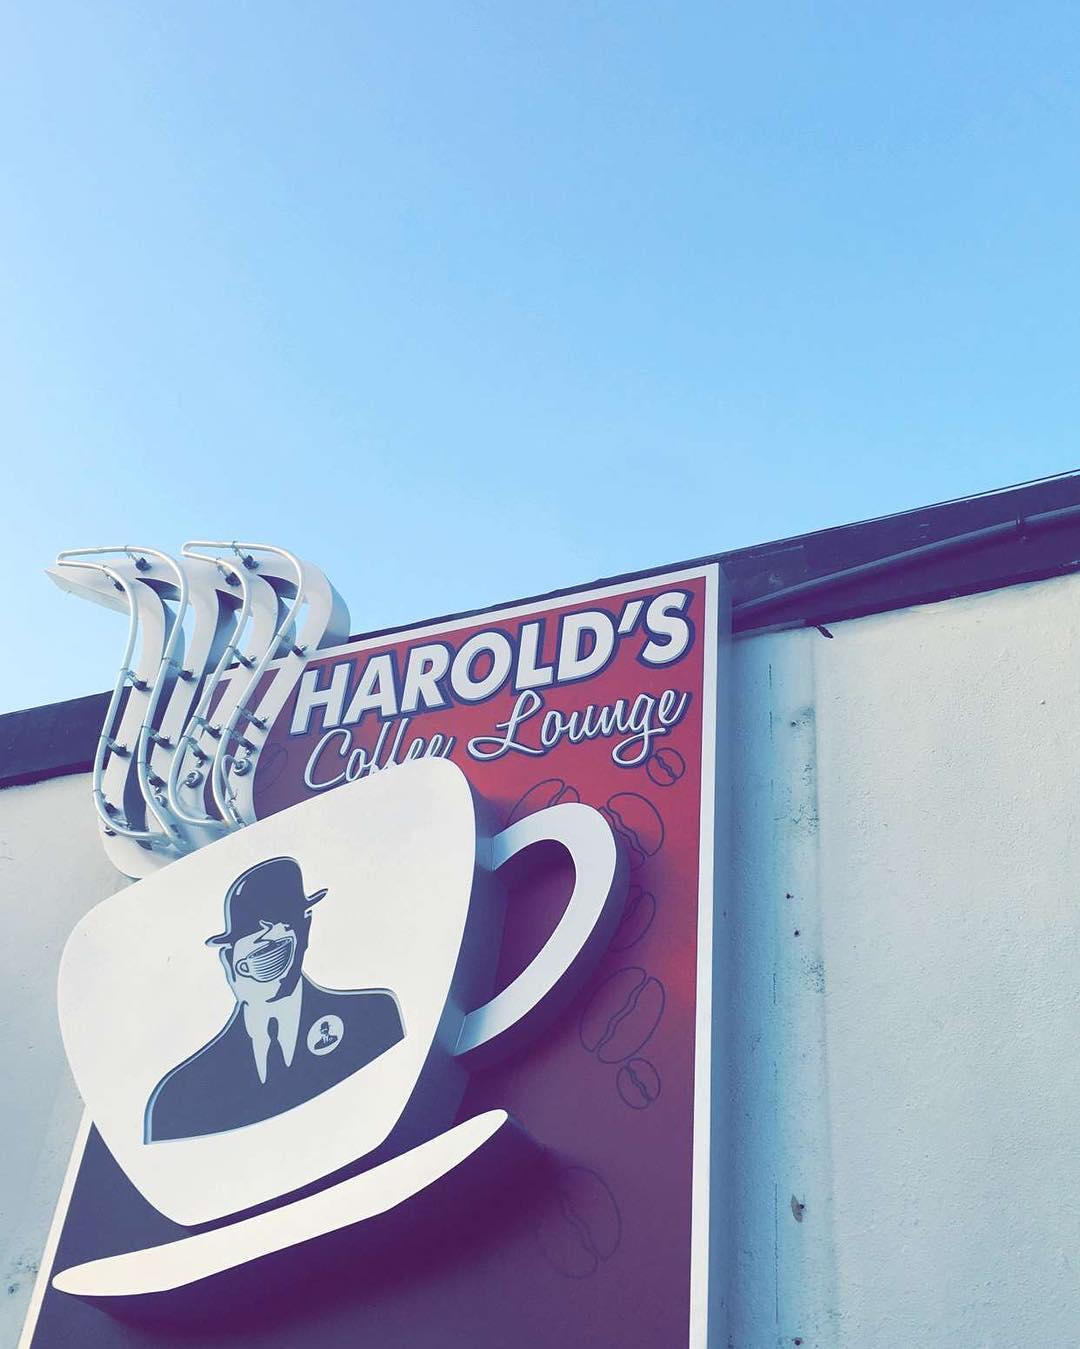 Harold's Coffee Lounge Photo